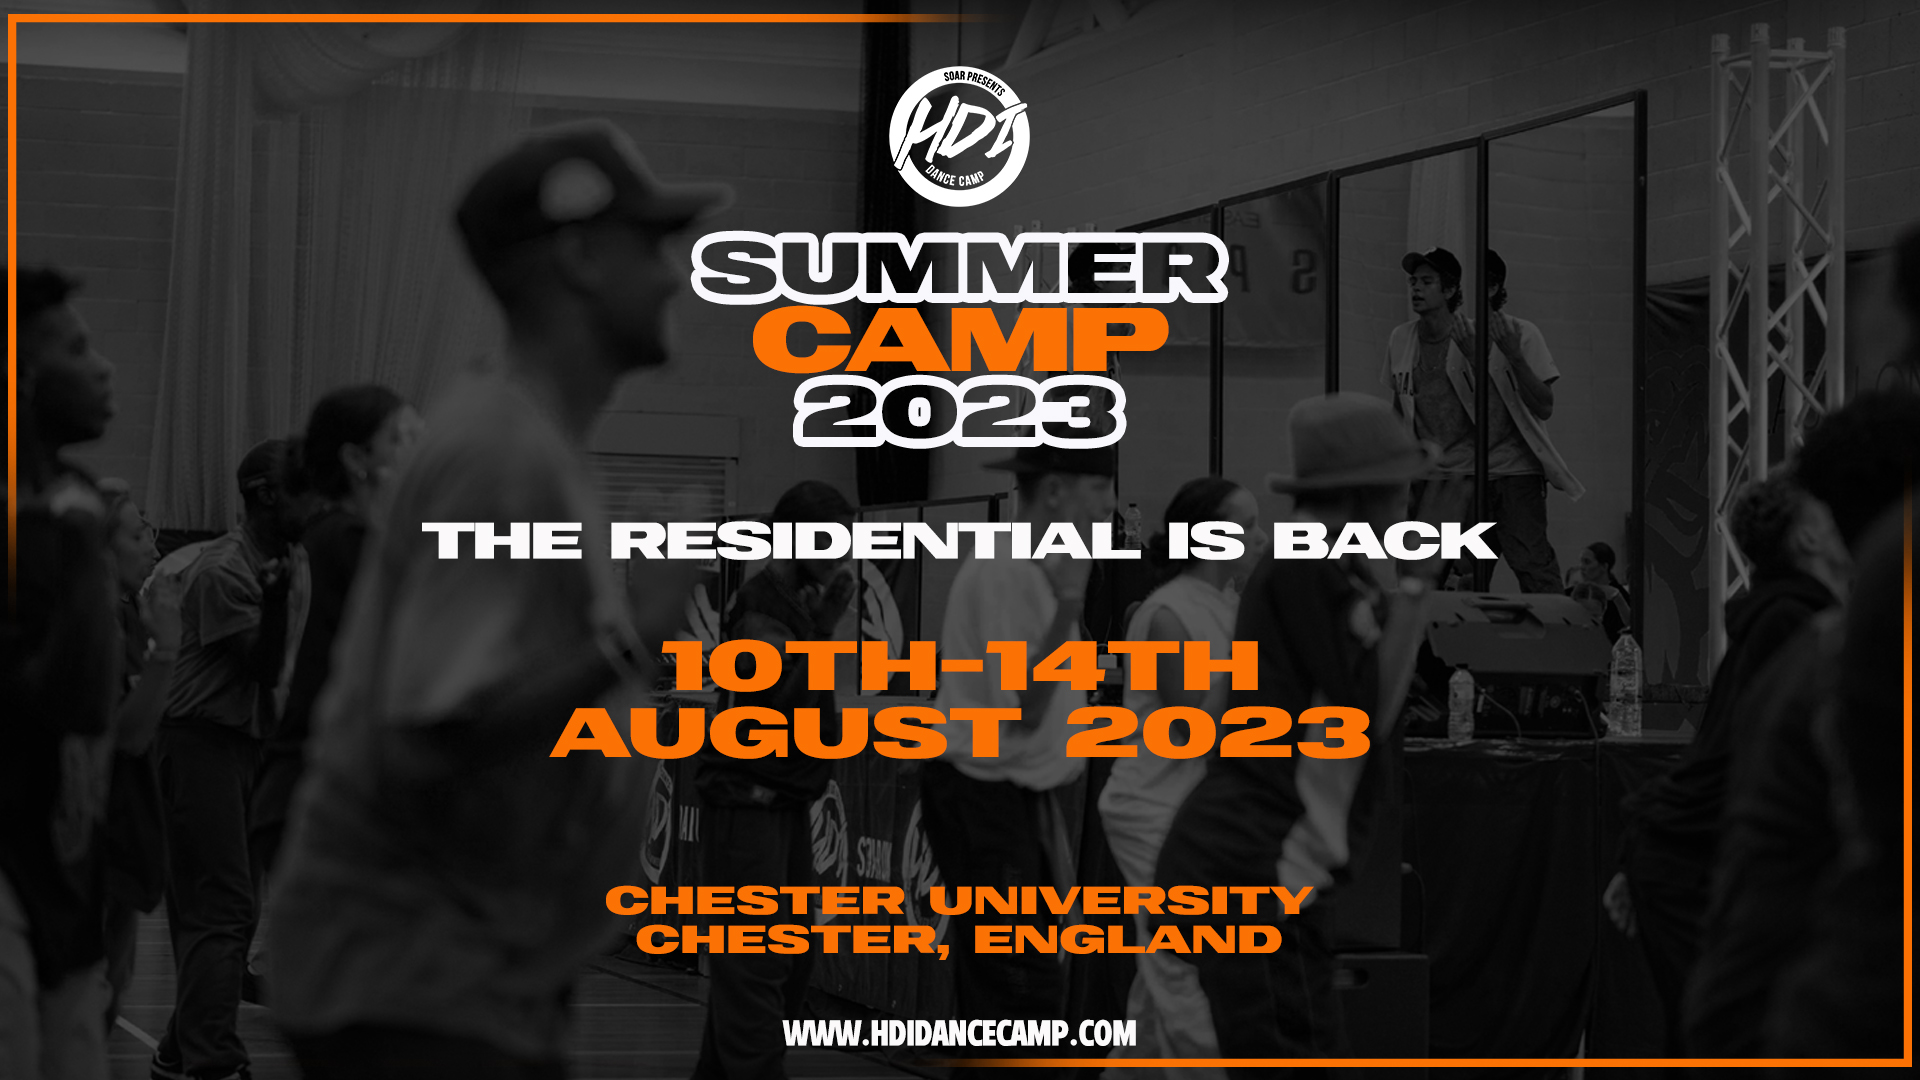 HDI UK SUMMER CAMP 2023 HDI Dance Camp